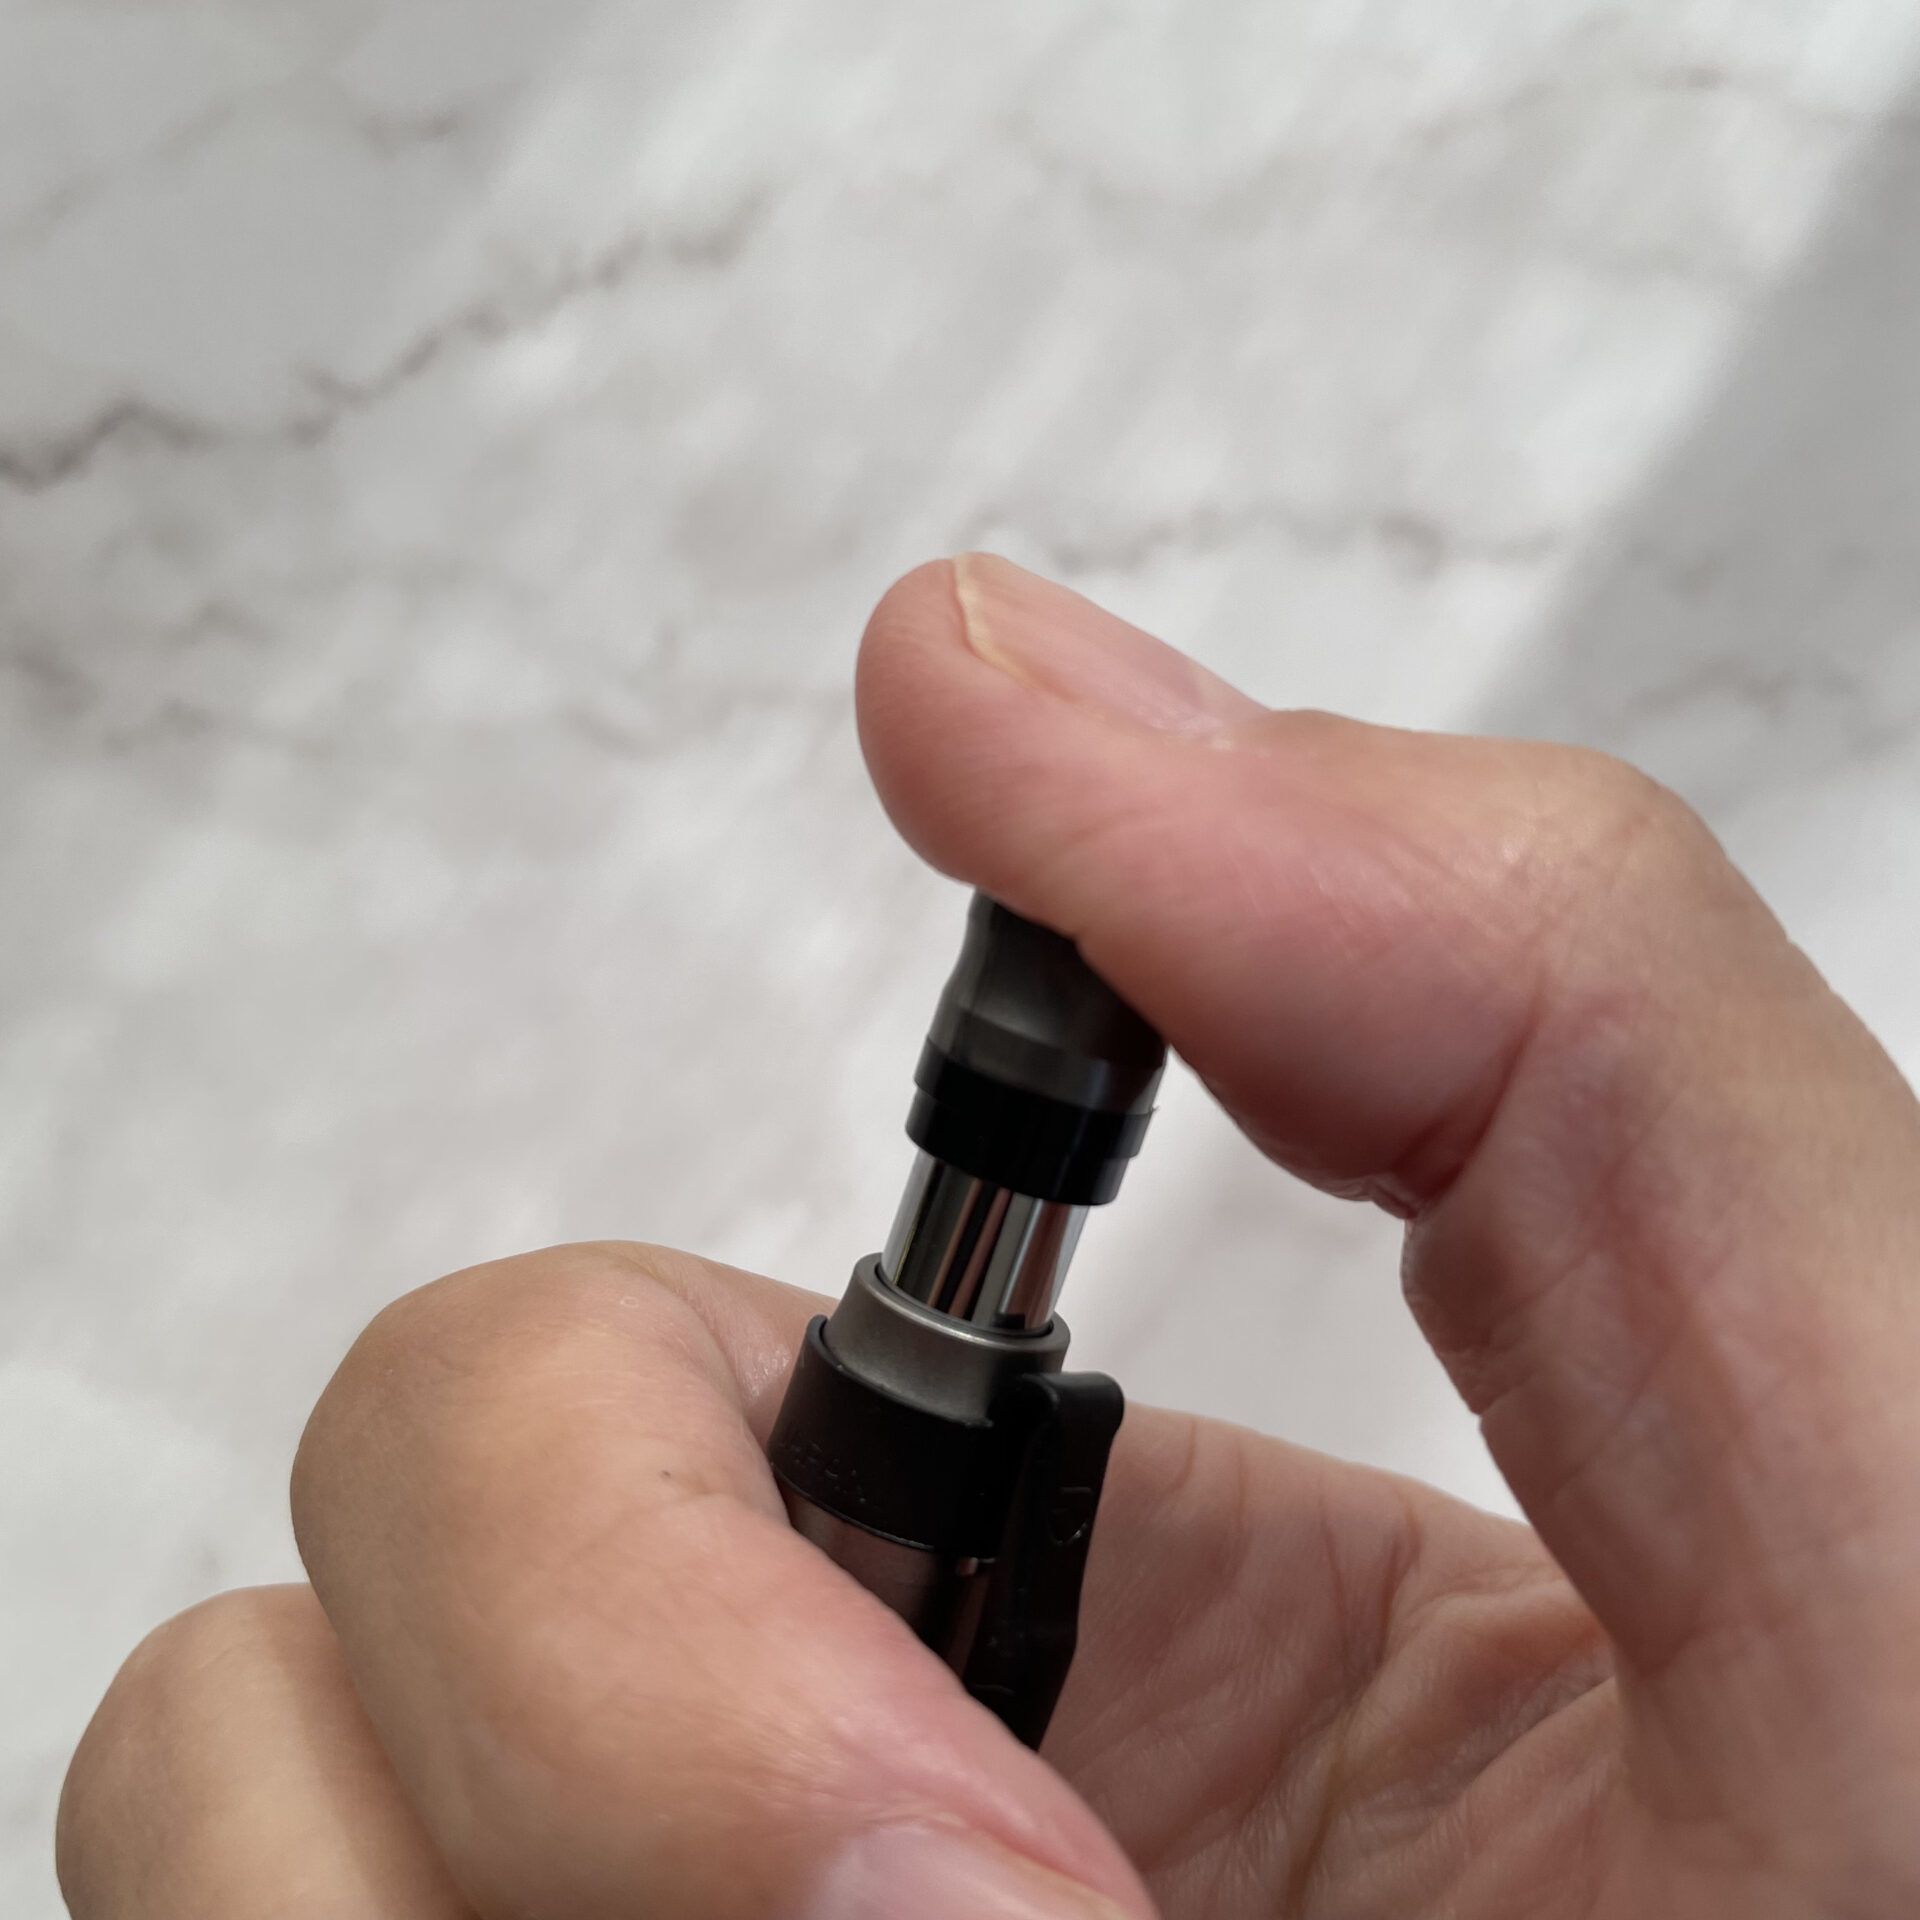 ZEBRA（ゼブラ）デルガード・タイプLxのエコールグループ限定色、ガンメタリックカラーの芯を出す「ノック部分」が太めで平らになっているので親指に食い込まず押しやすいのが特徴です。